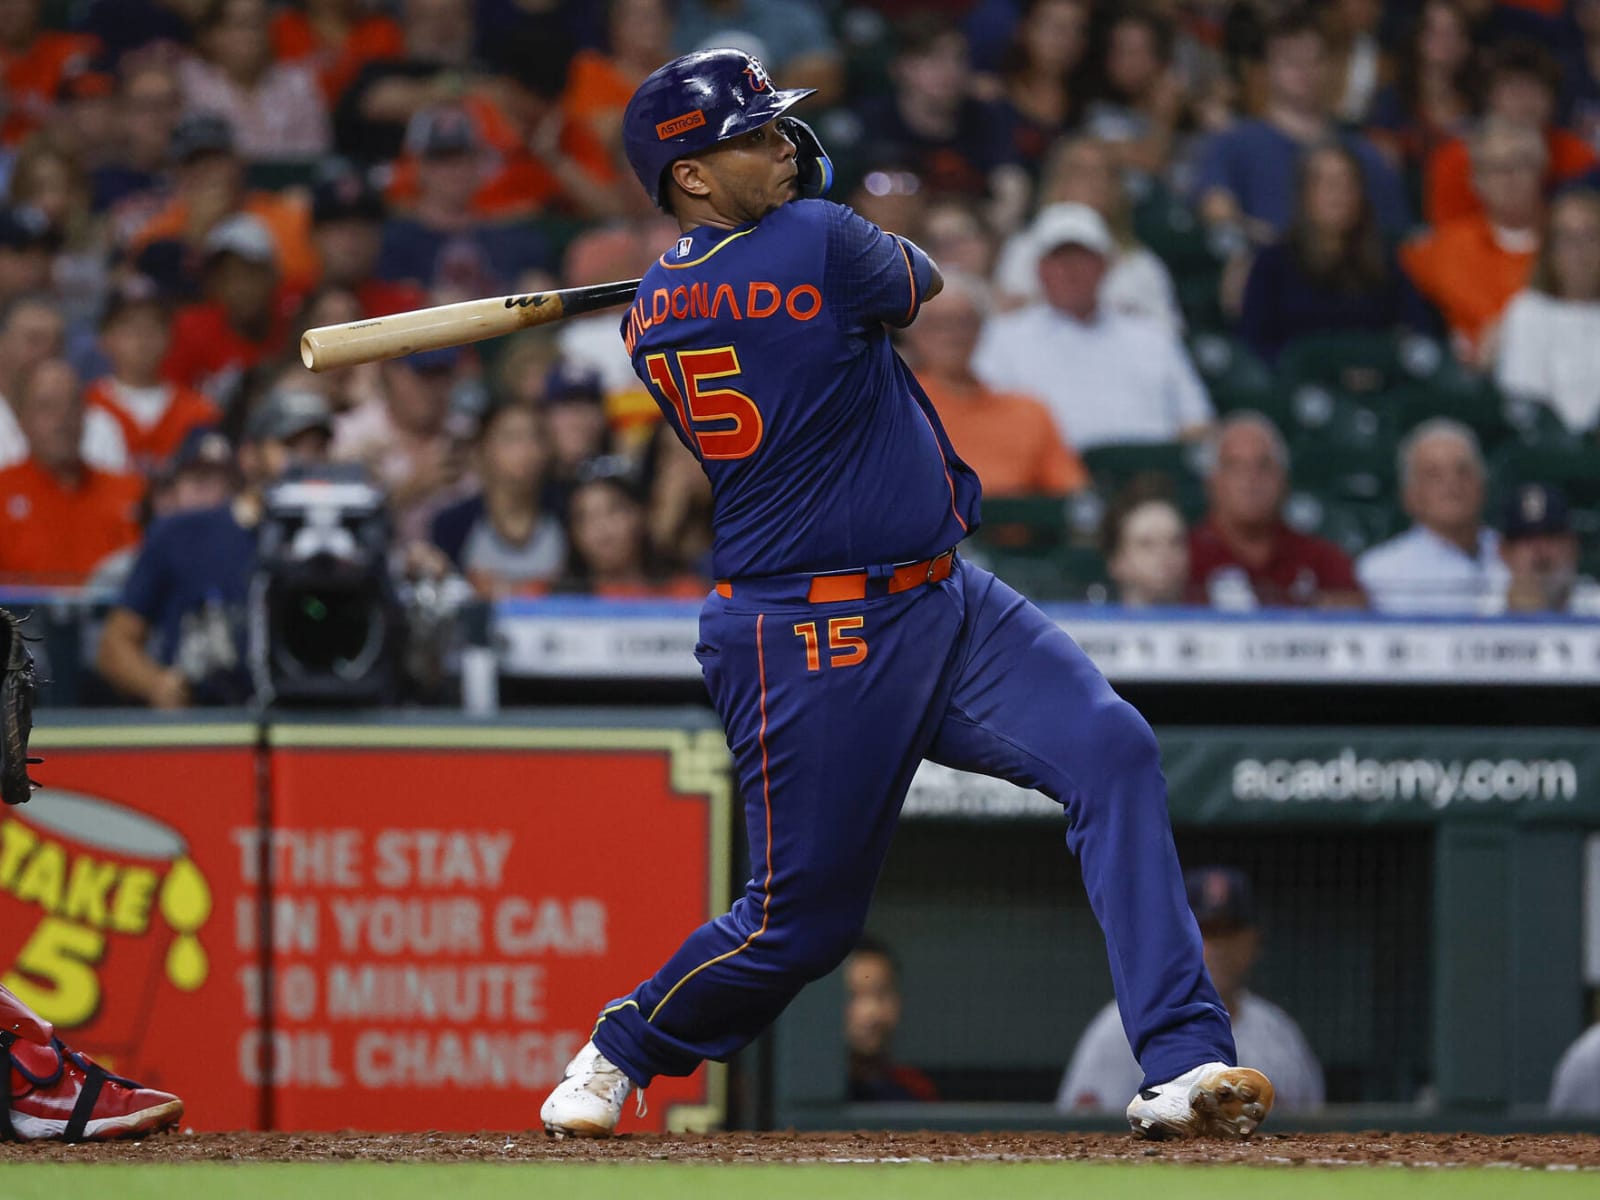 Houston Astros: Martín Maldonado finds added motivation after affront